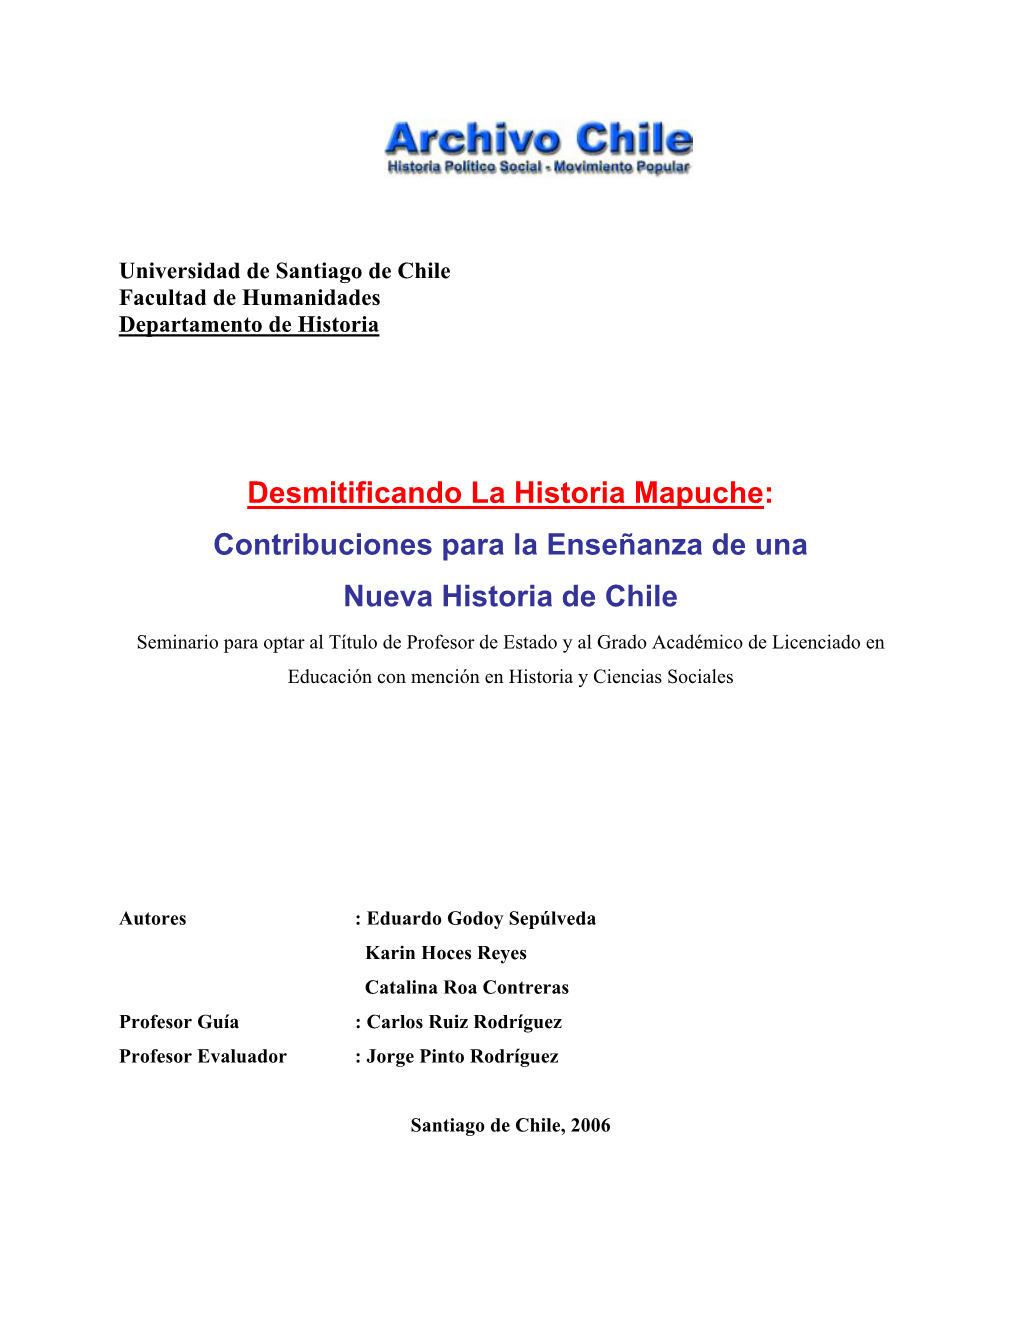 Desmitificando La Historia Mapuche. Eduardo Godoy, Karin Hoces Y Catalina Roa. 5,5 MB